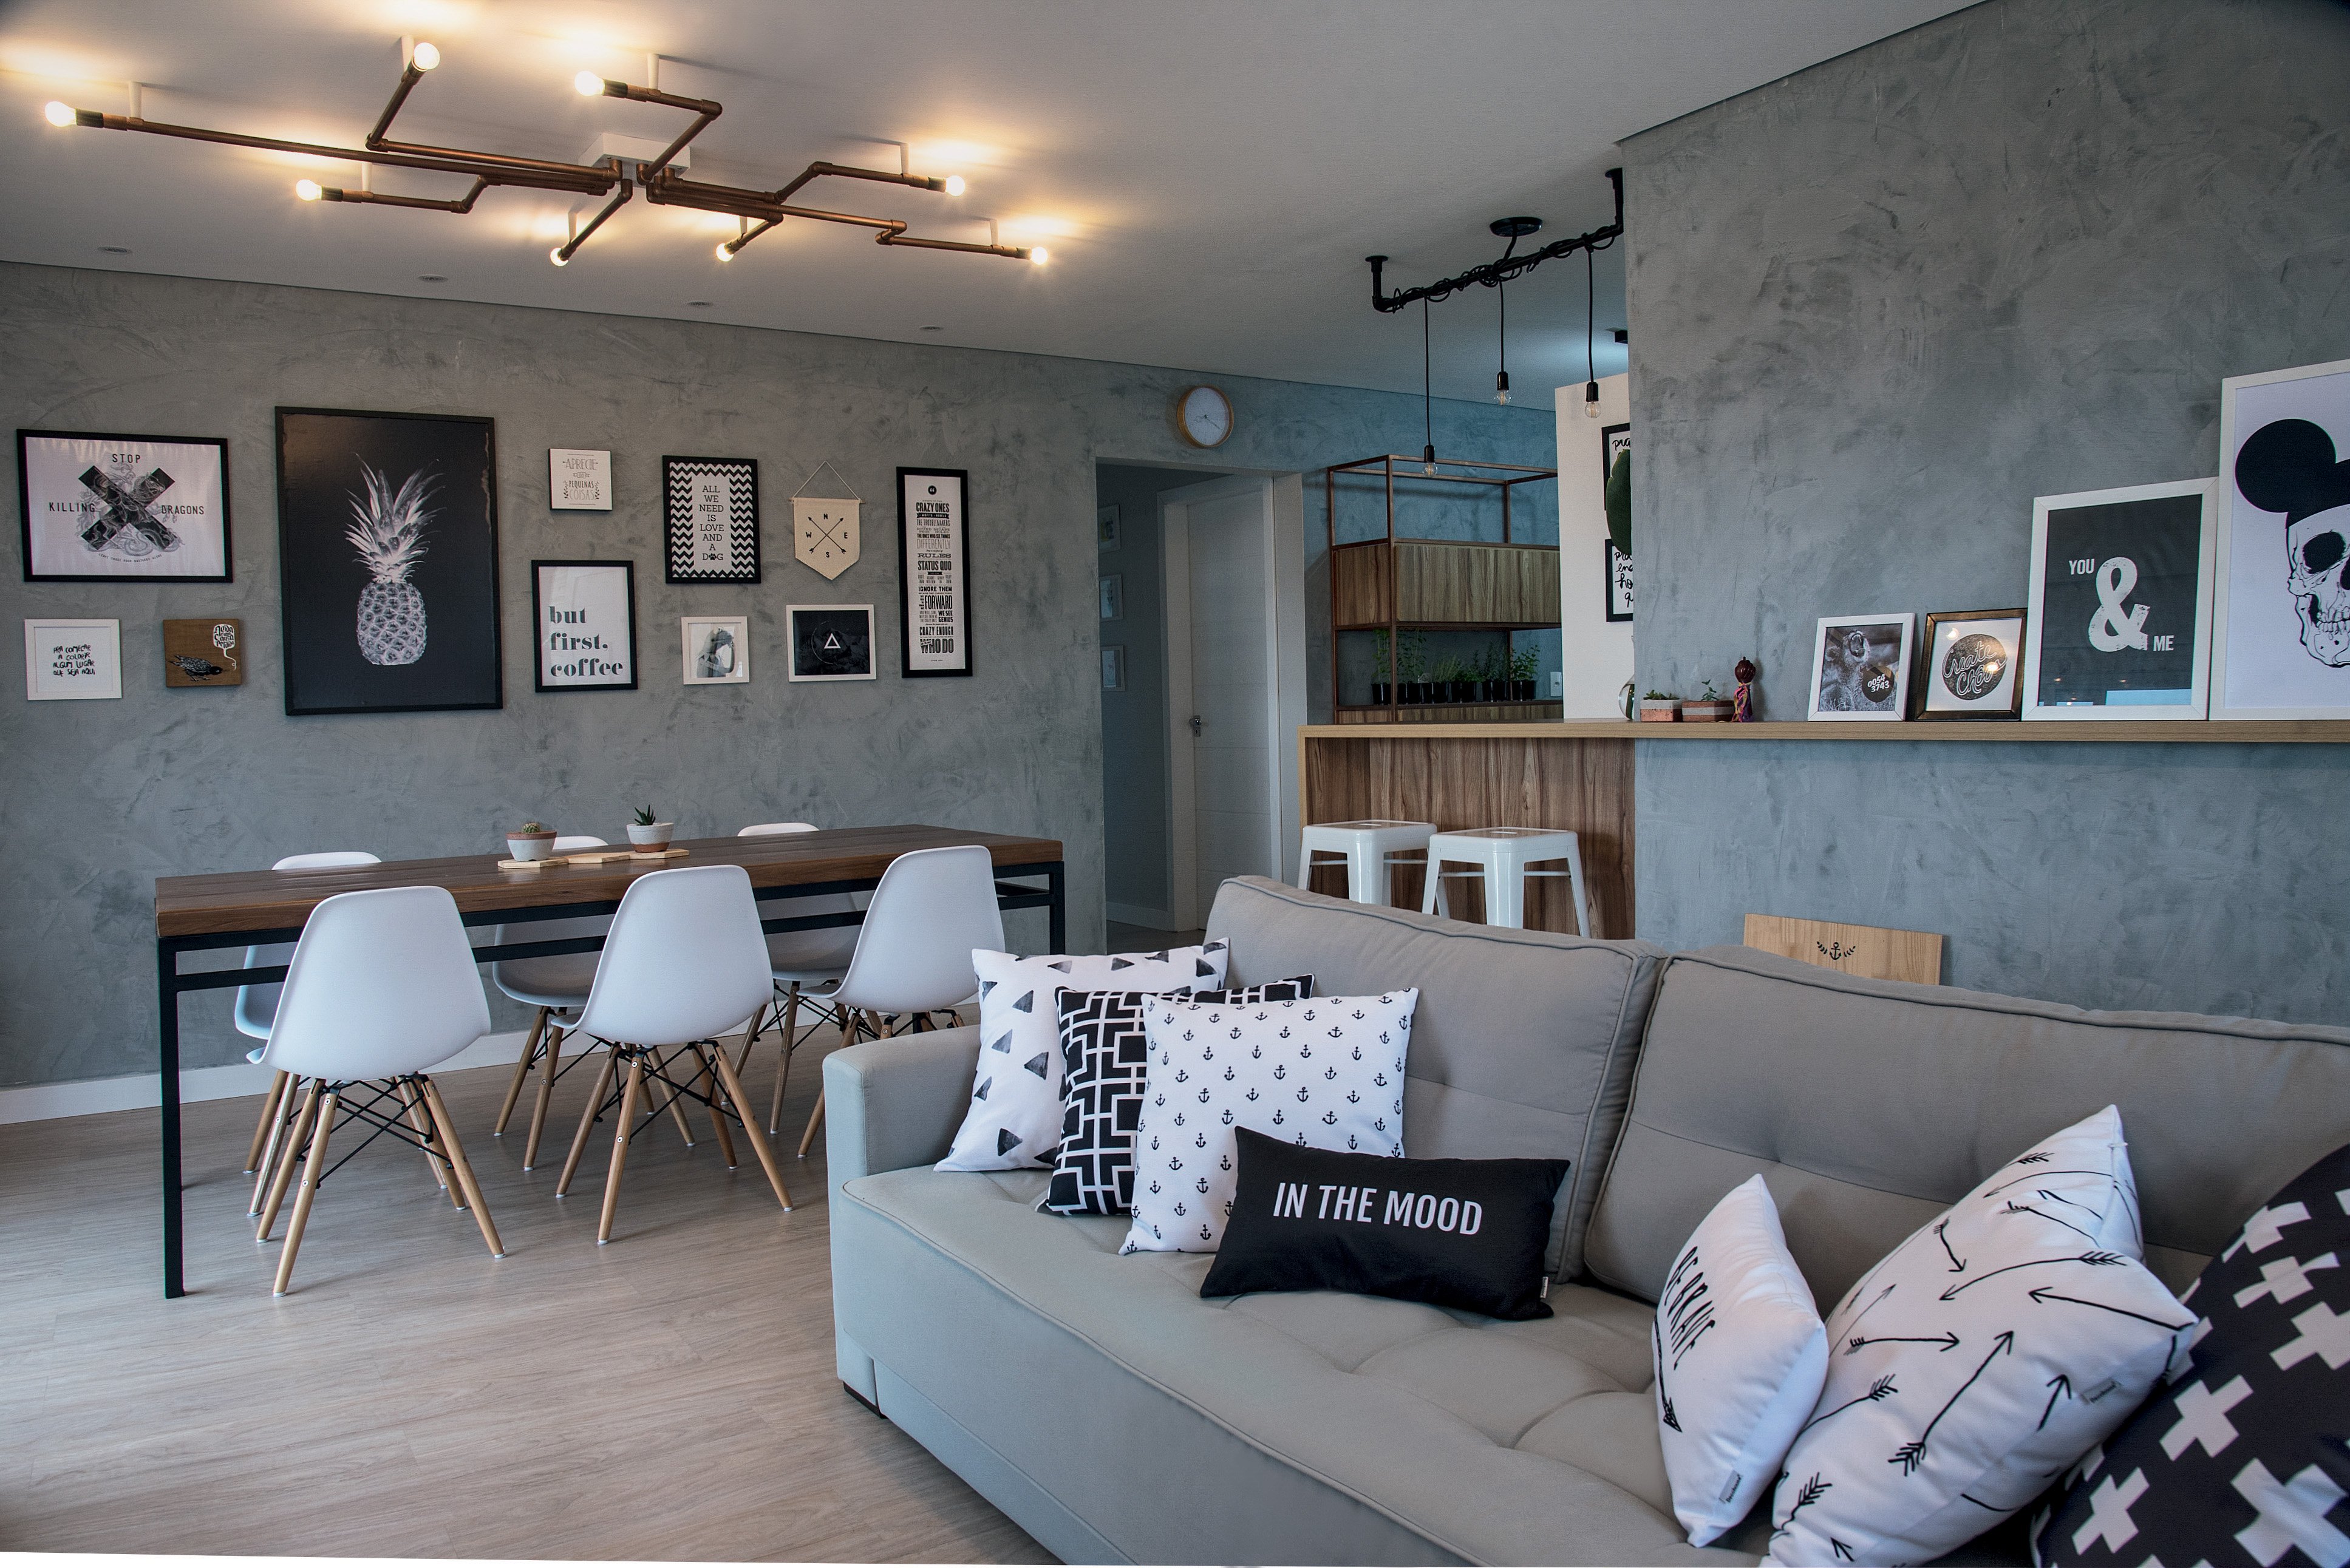 Este apartamento segue à risca o estilo escandinavo em tons neutros, cimento, piso de madeira, mesa com pés de metal, luminárias aparentes e molduras em P&B com grafismos.